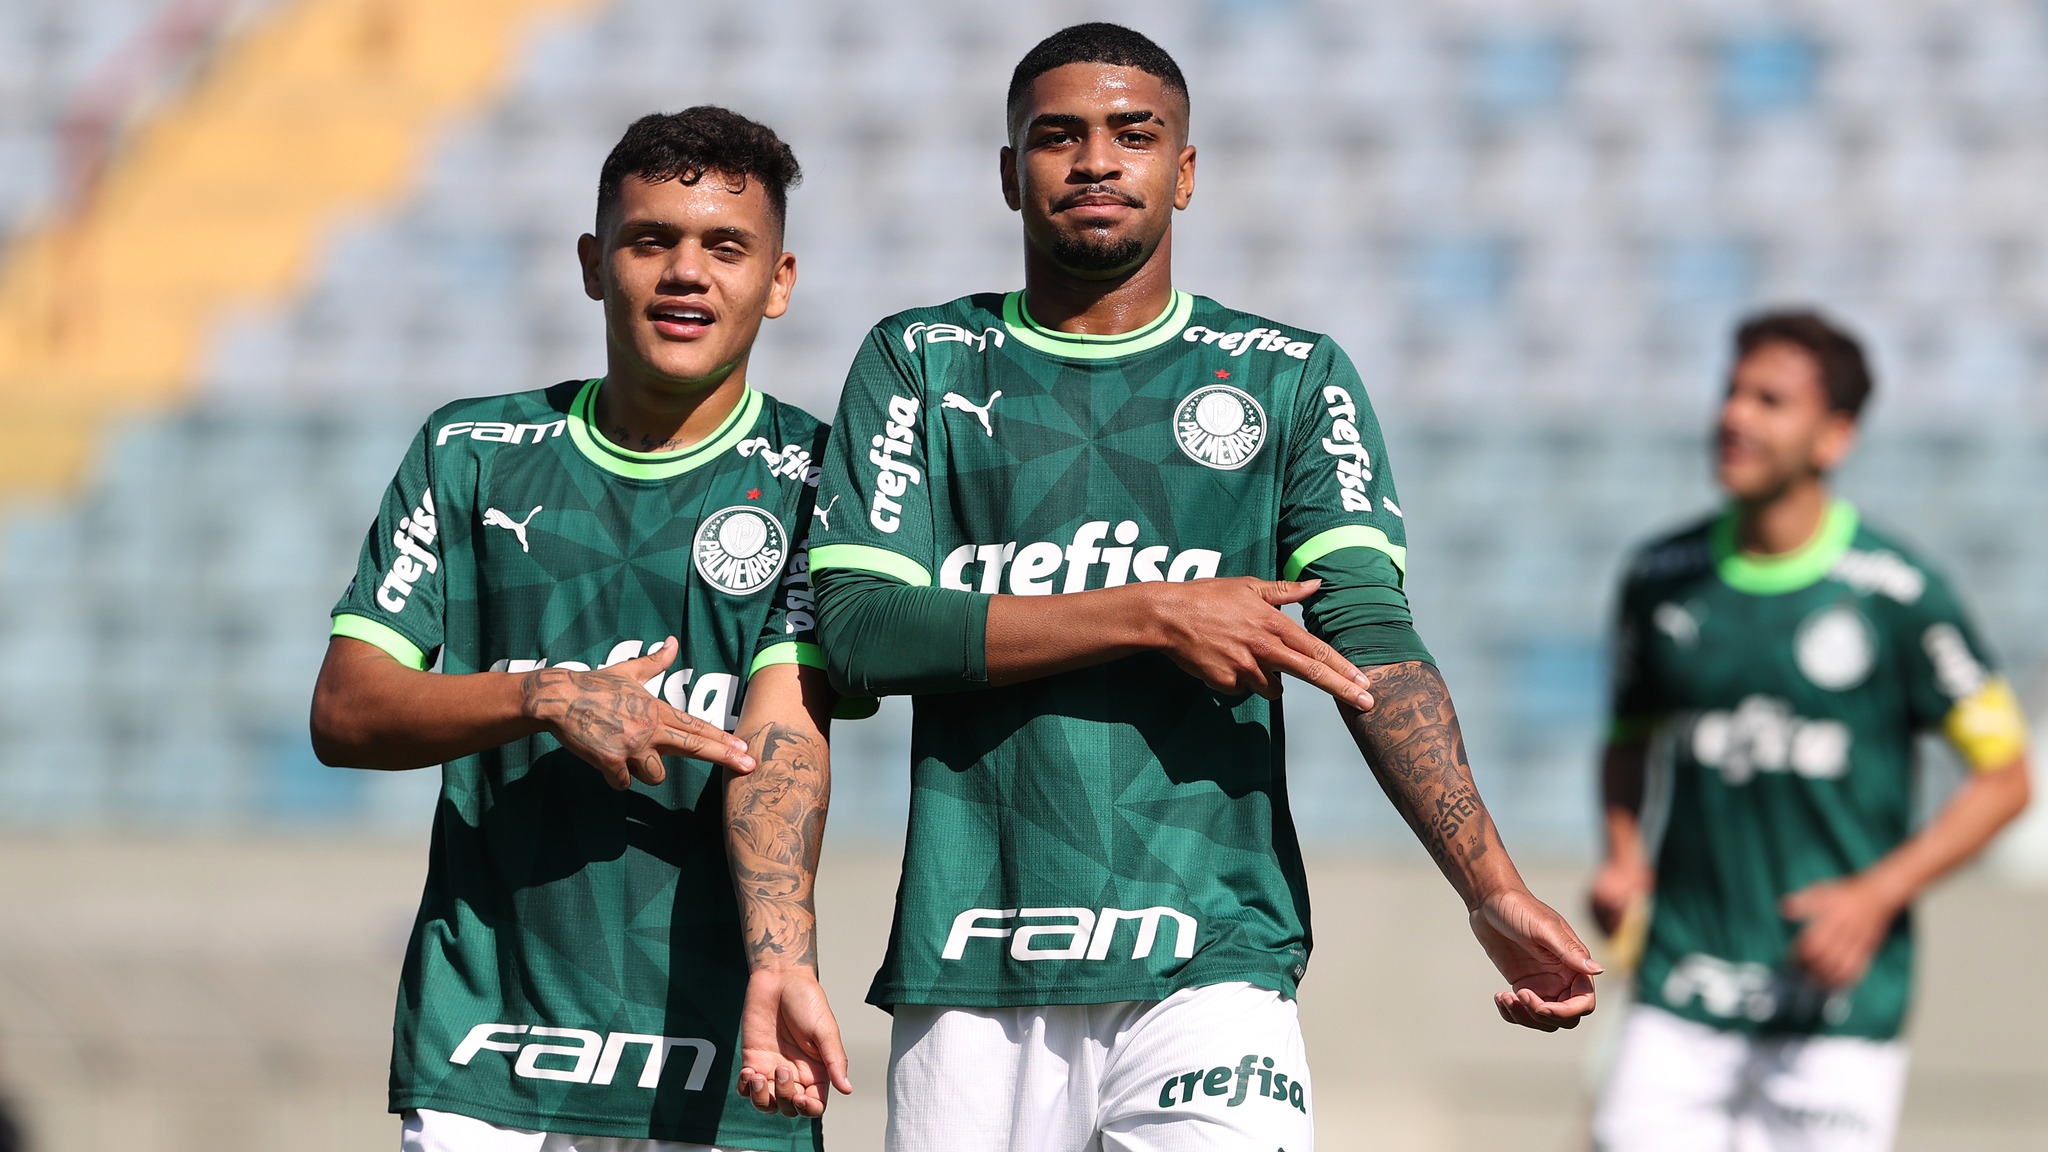 Palmeiras continua com 100% de aproveitamento no Paulista Sub-20